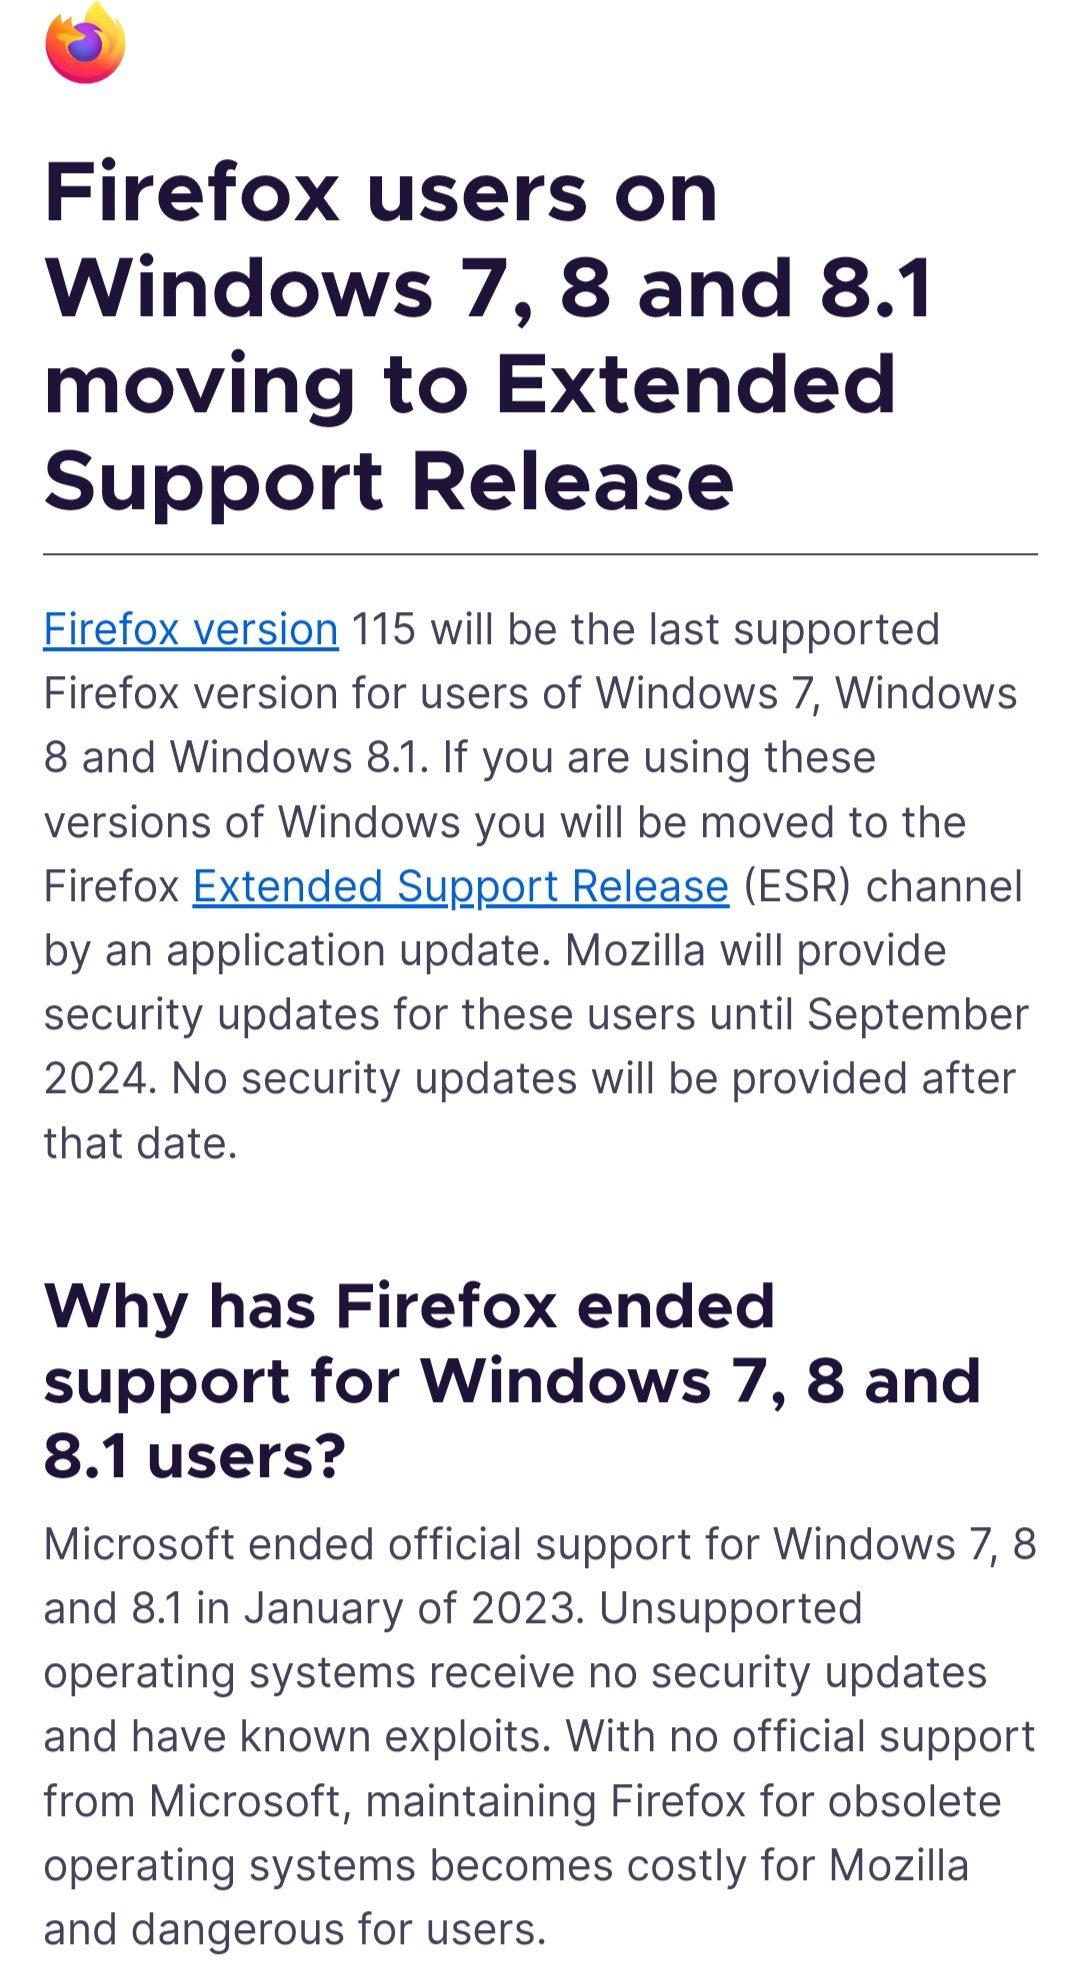 موزيلا تعلن عن انتهاء دعم فايرفوكس لأنظمة ويندوز 7 و 8/8.1 بحلول سبتمبر/آب 2024